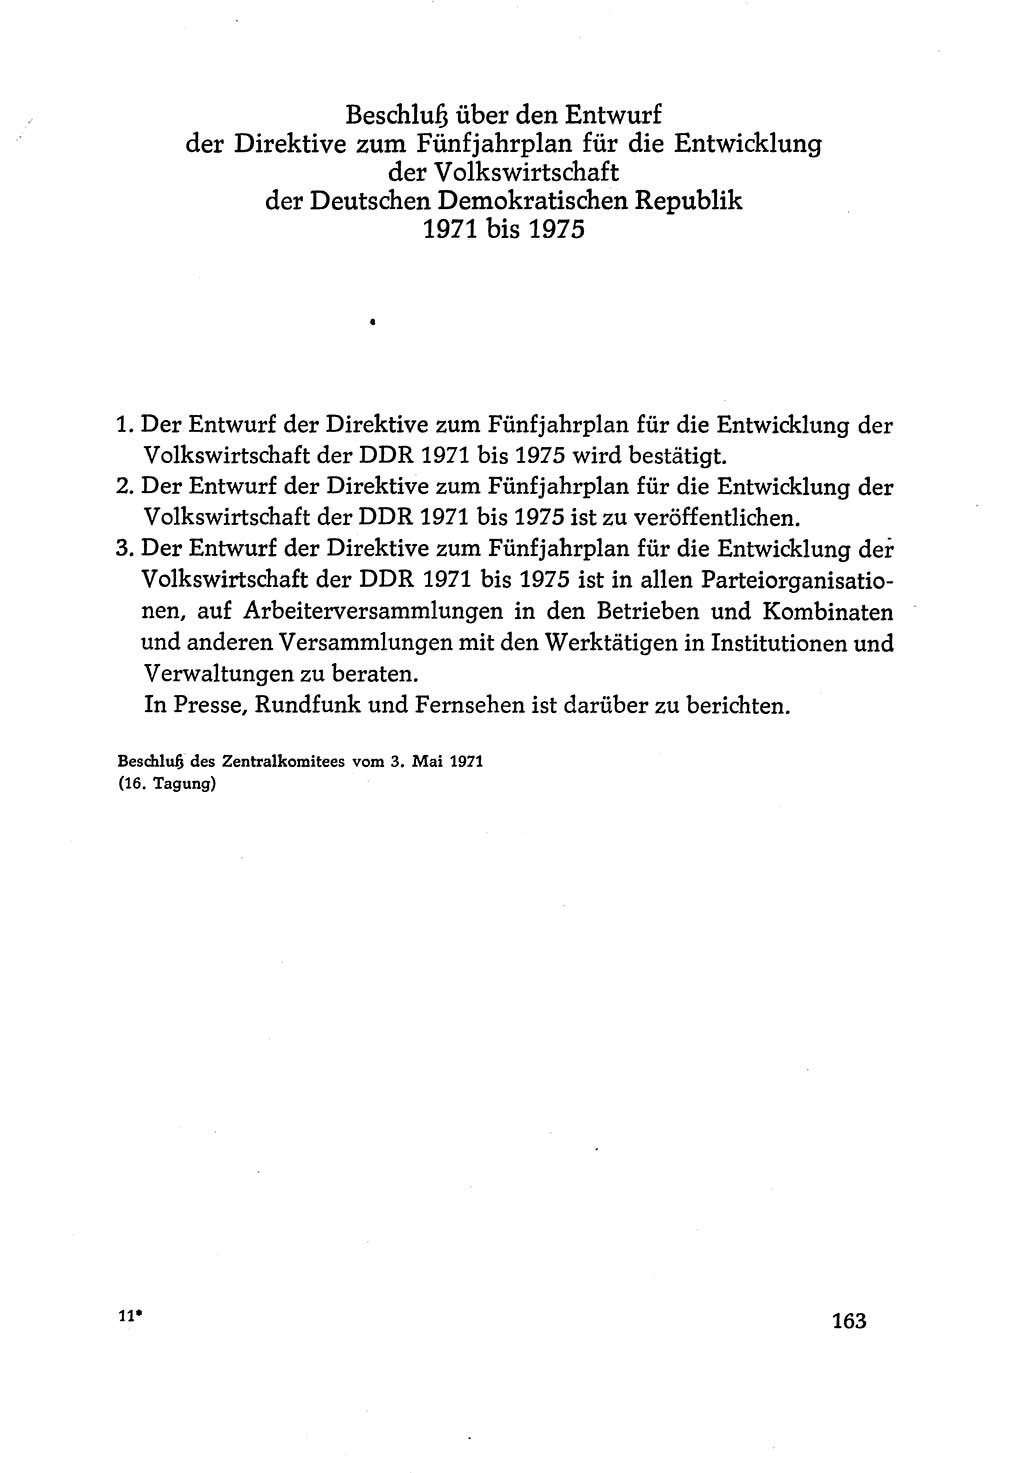 Dokumente der Sozialistischen Einheitspartei Deutschlands (SED) [Deutsche Demokratische Republik (DDR)] 1970-1971, Seite 163 (Dok. SED DDR 1970-1971, S. 163)